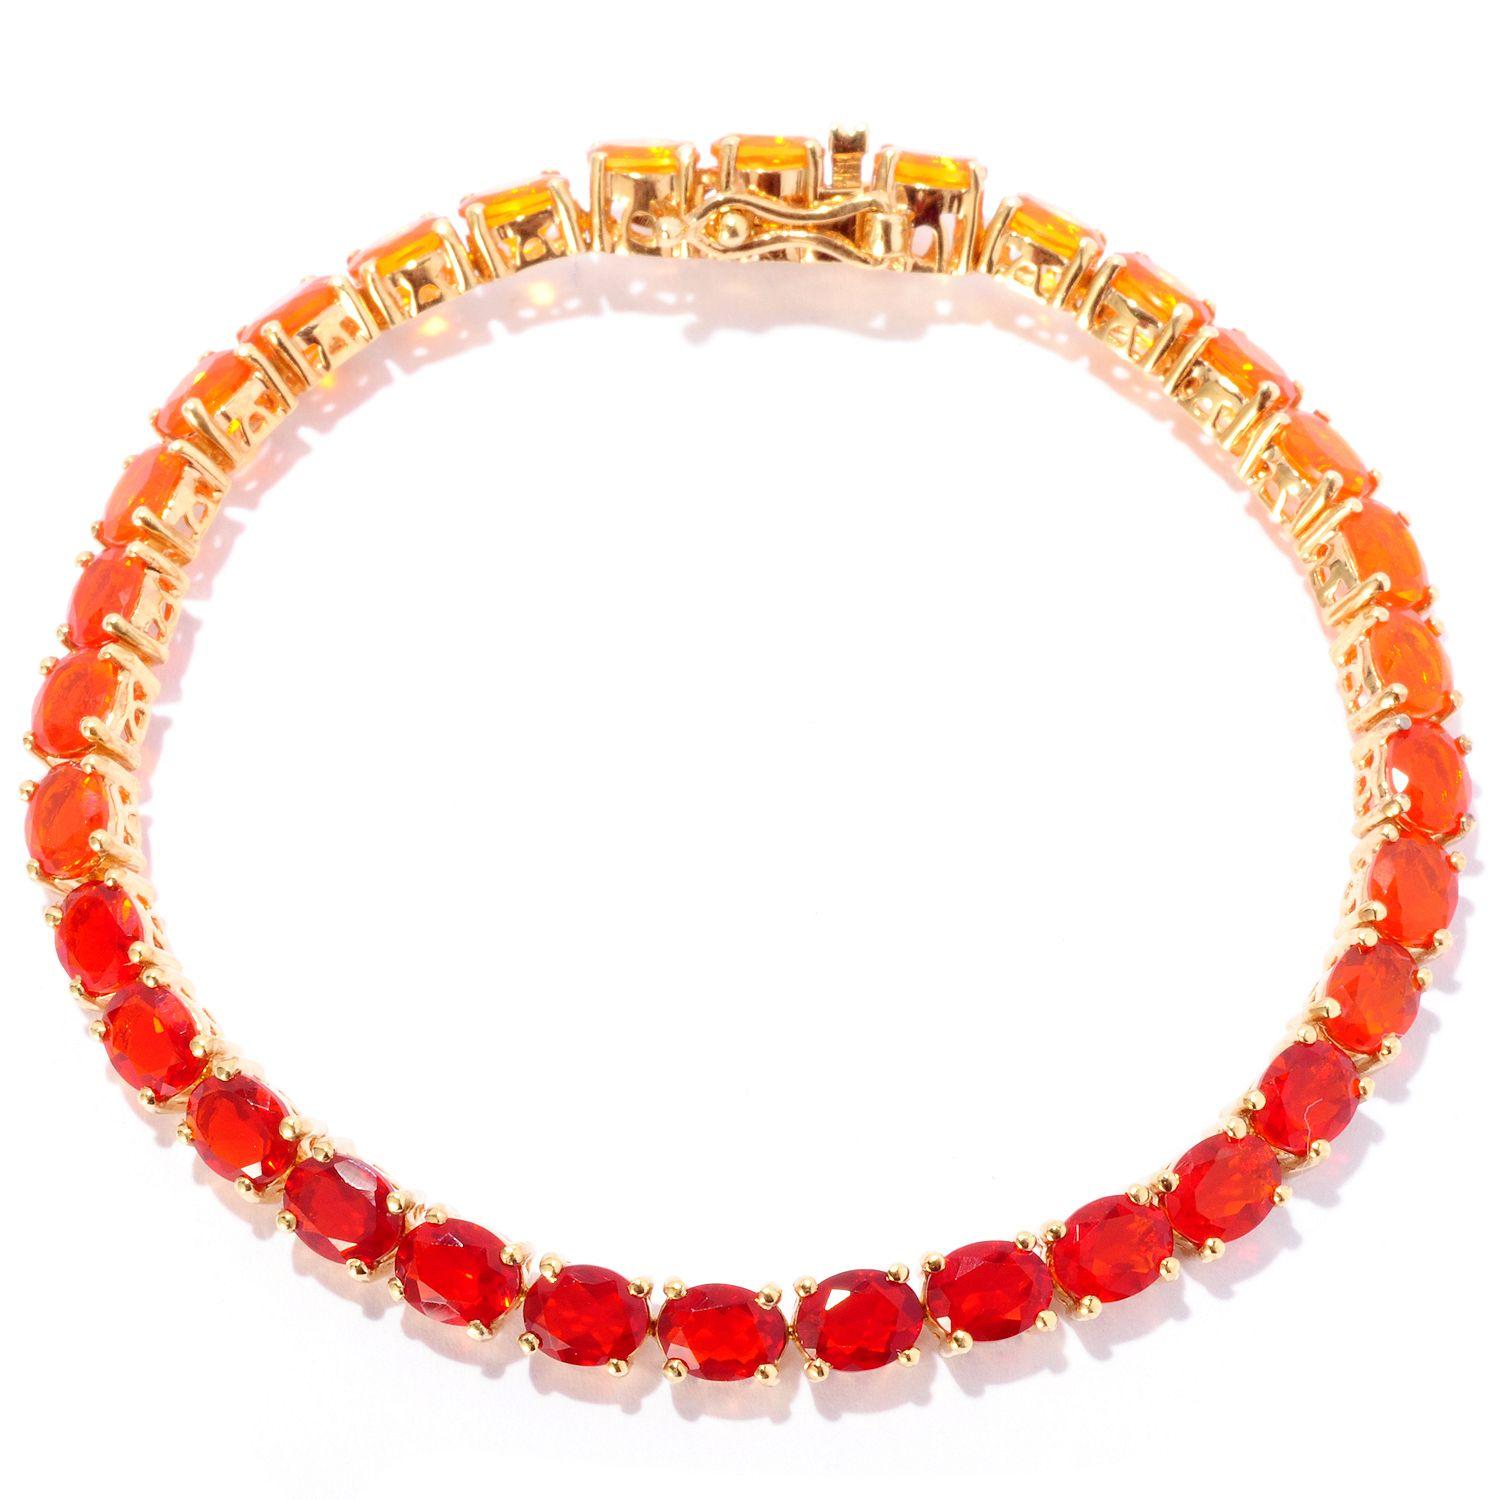 NYC II Shades of Fire Opal Tennis Bracelet, fire opal bracelet, fire opal jewelry